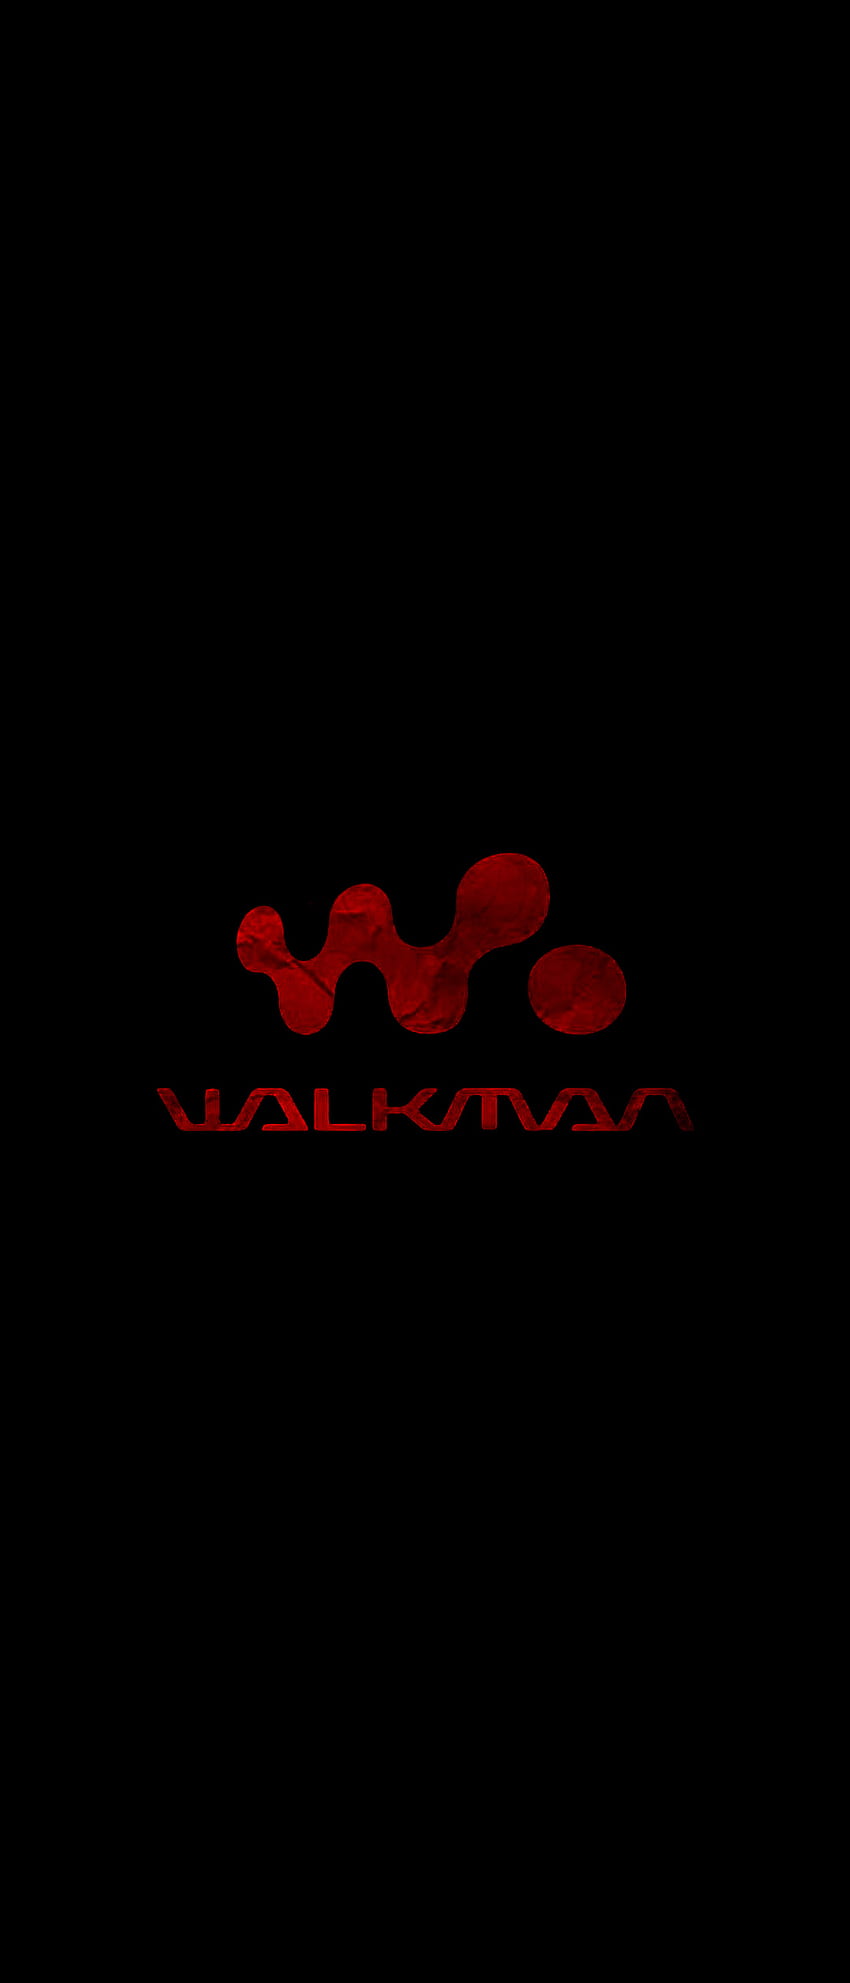 Walkman, Sony HD phone wallpaper